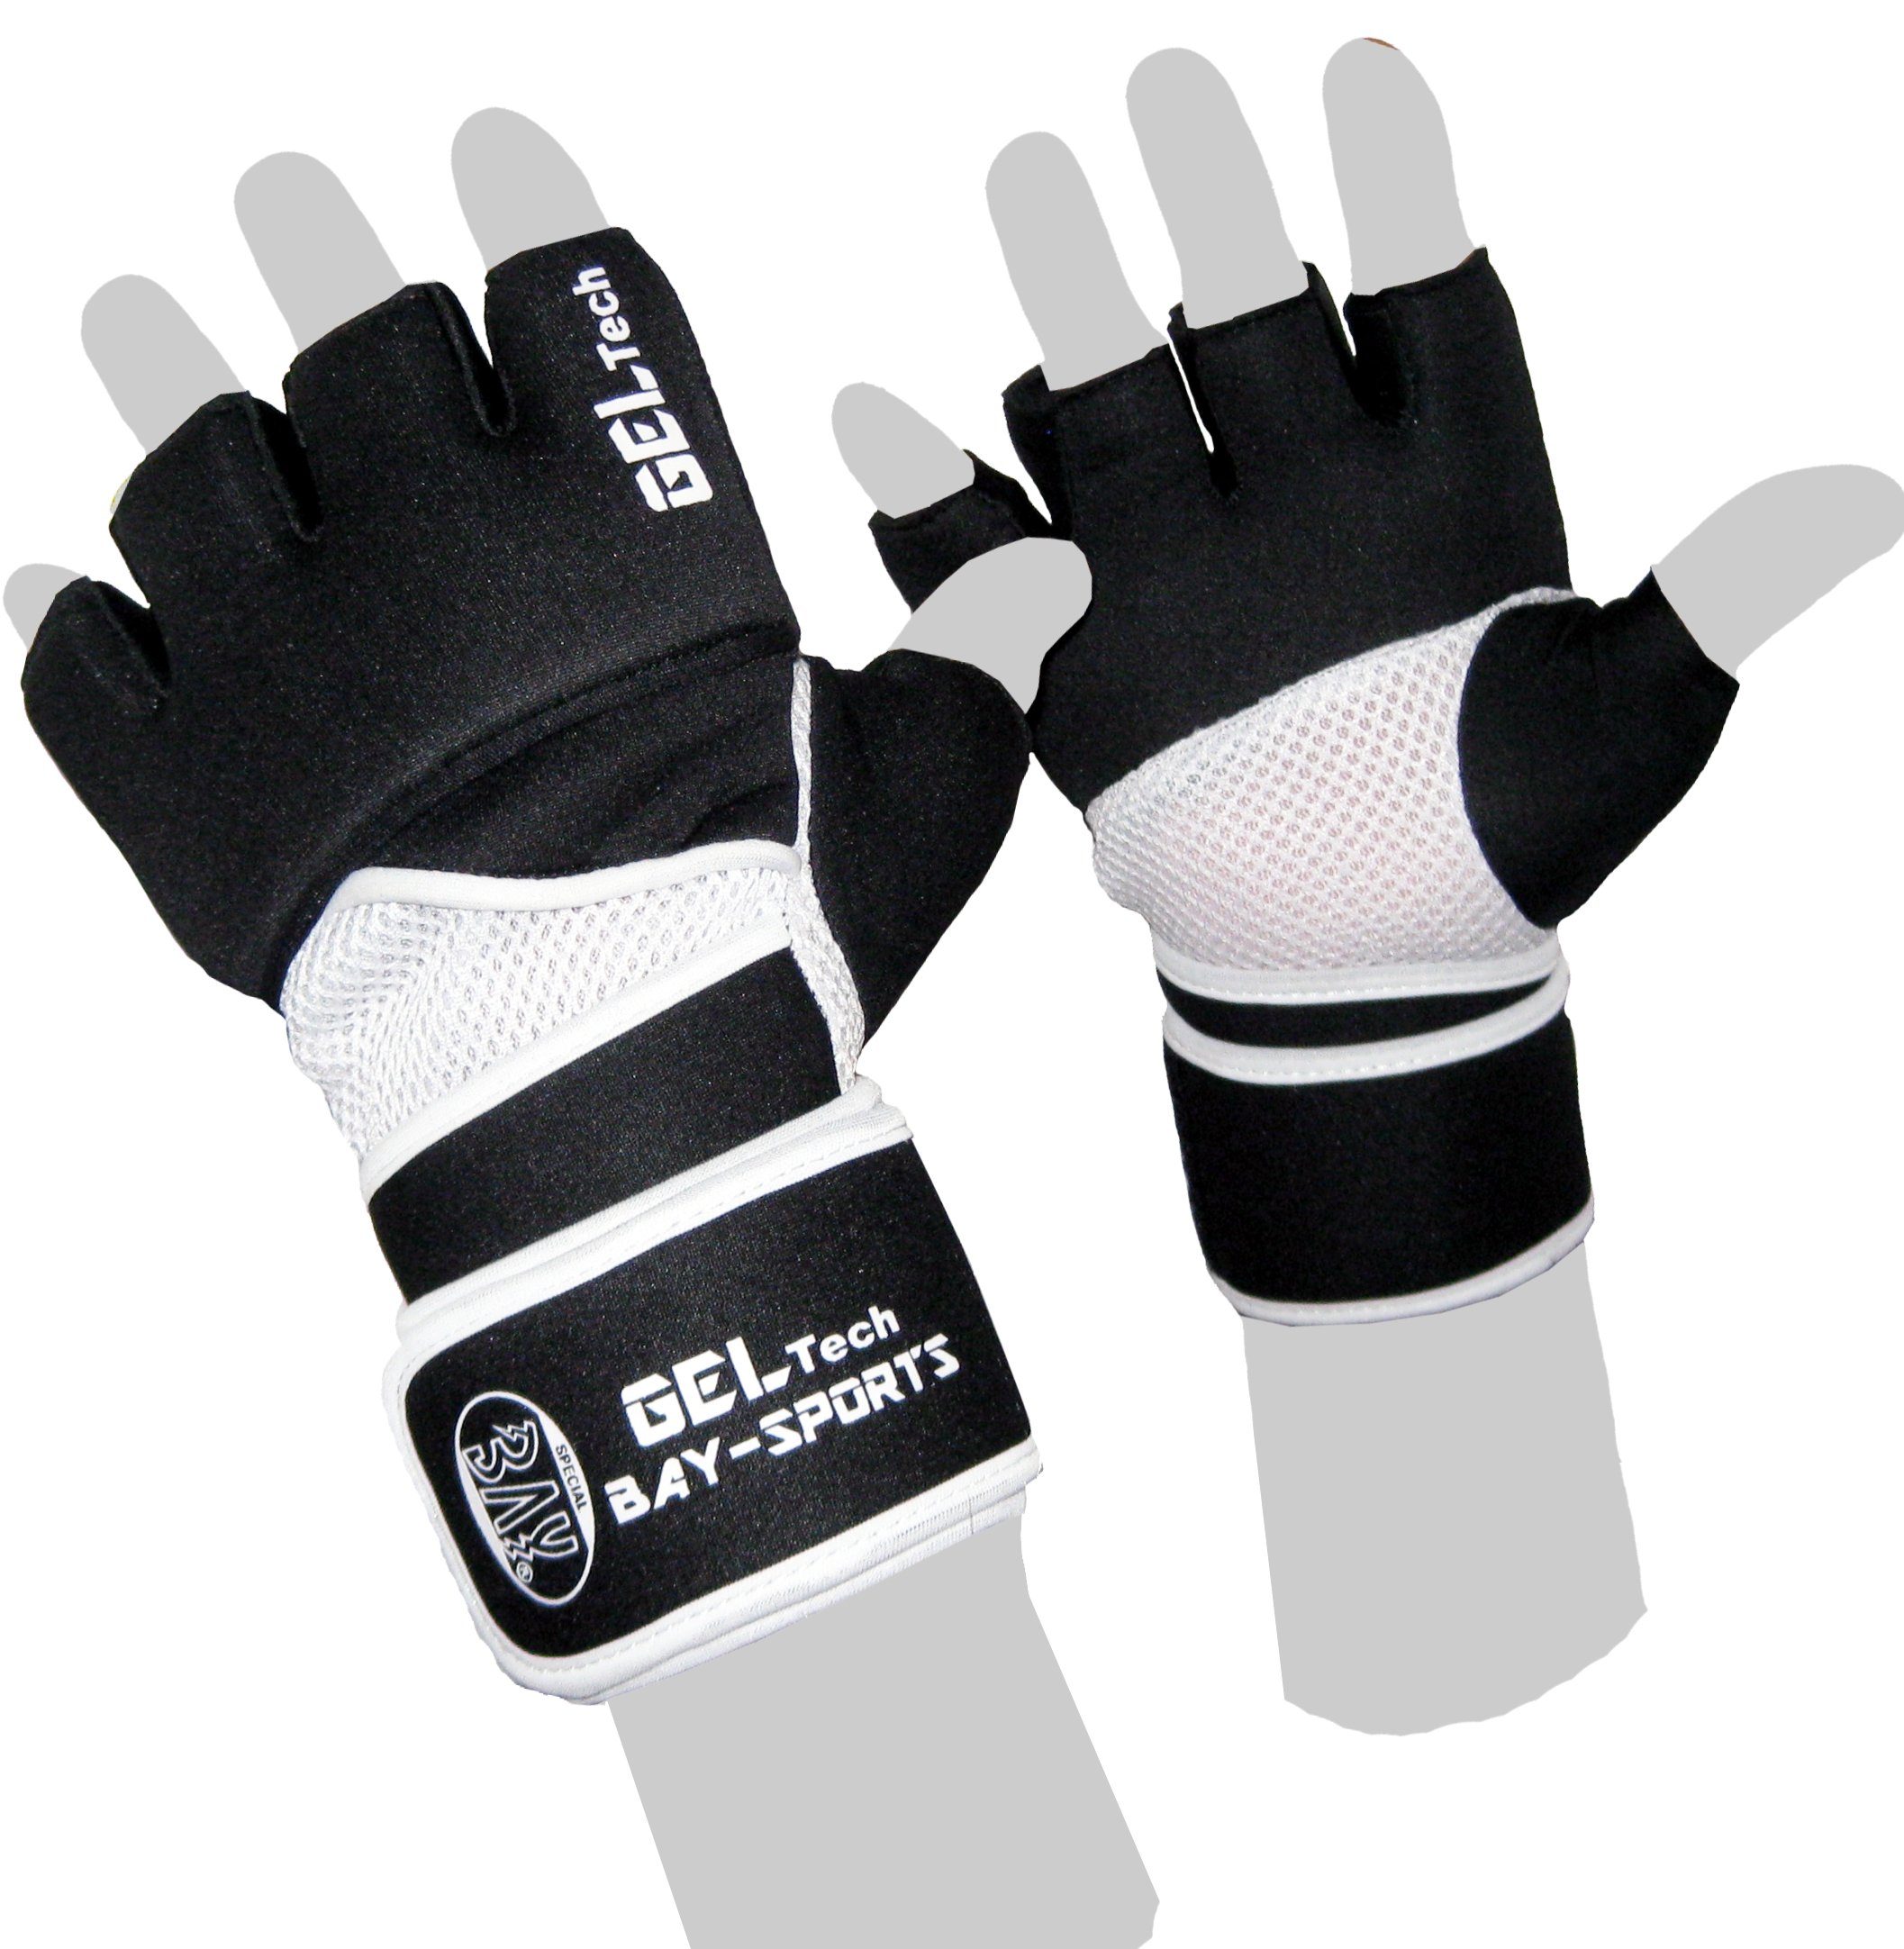 BAY-Sports Boxhandschuhe Winsome Handschutz Handschuhe Kinder - Boxsack und XL XS Erwachsene Sandsack, Neopren